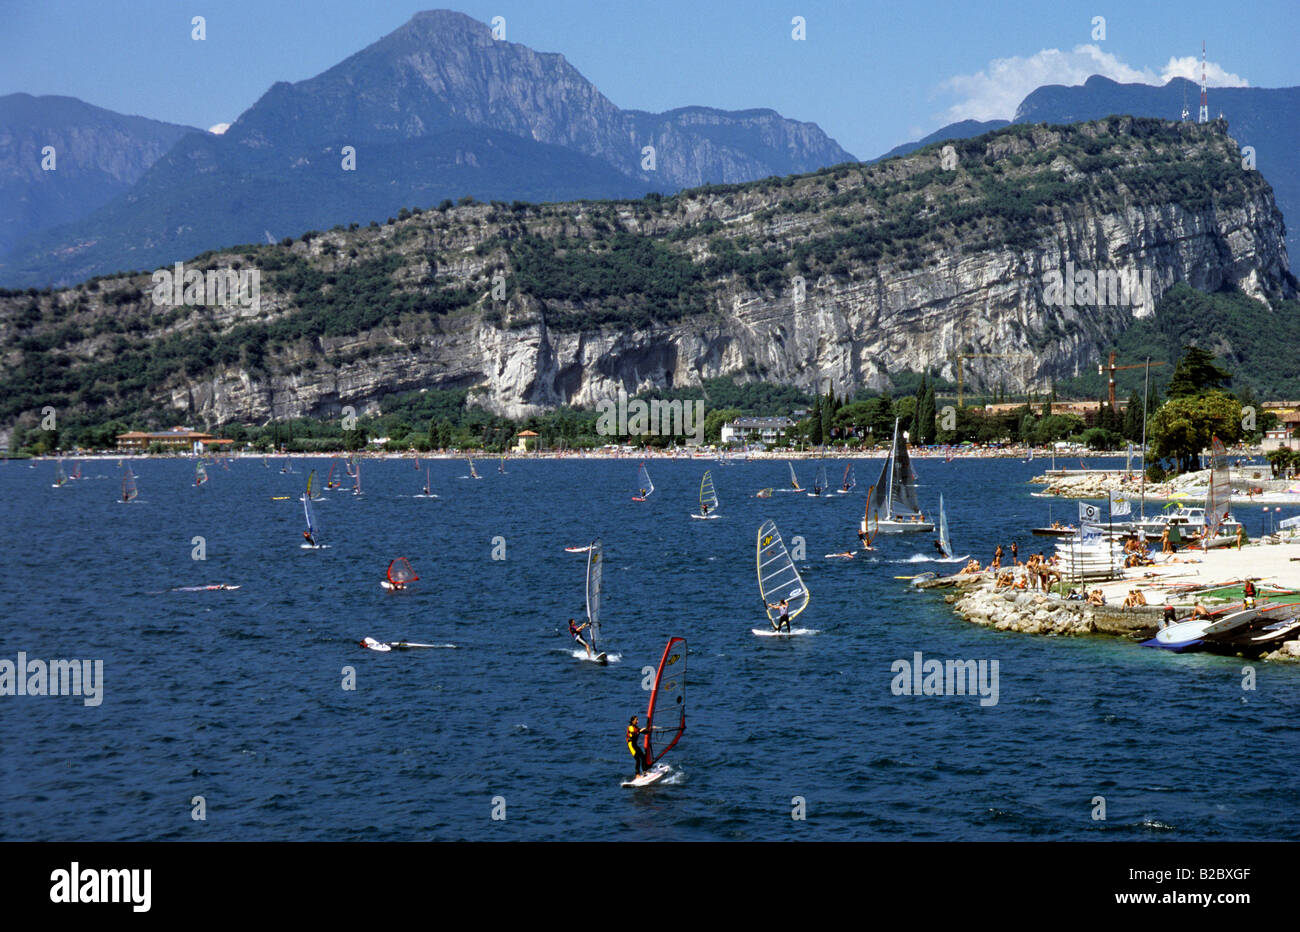 Les véliplanchistes sur le lac de Garde près de Malcesine, Italie, Europe Banque D'Images